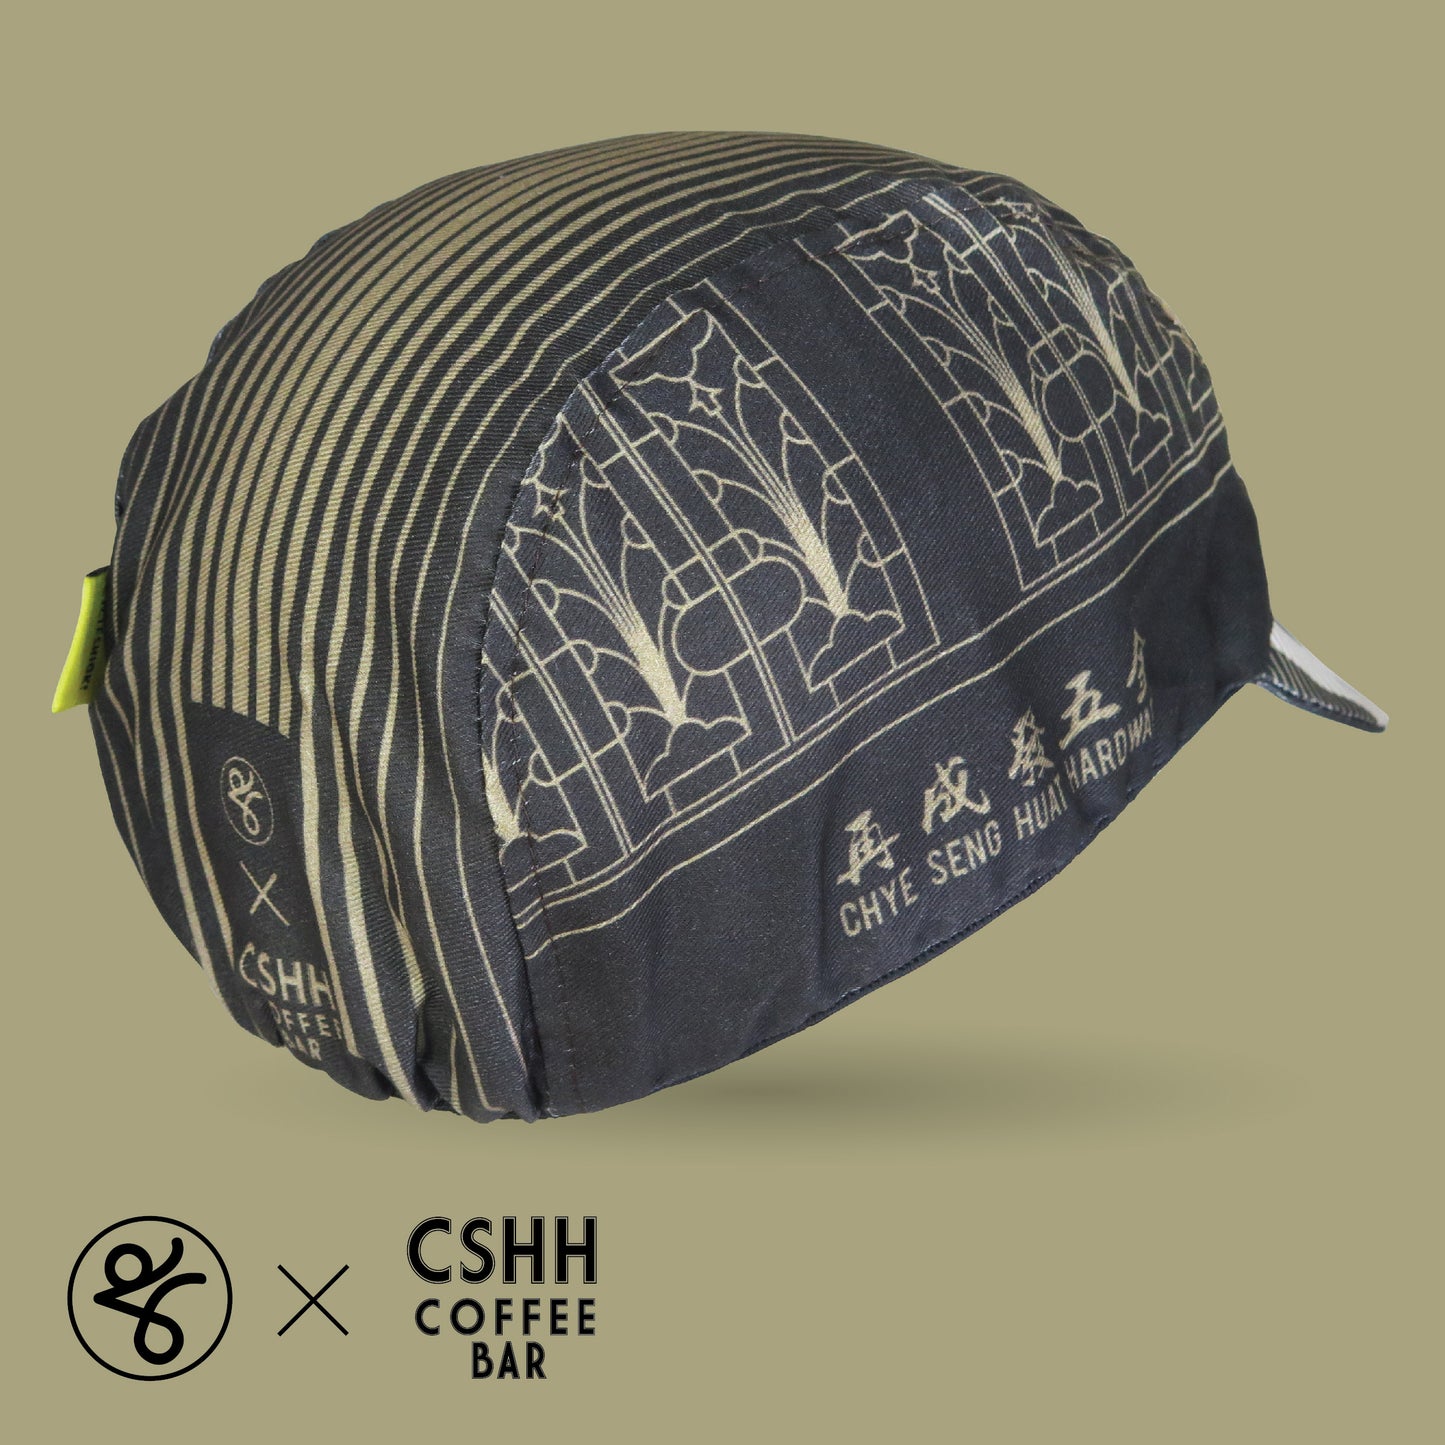 CSHH x Takachya Cycling Cap